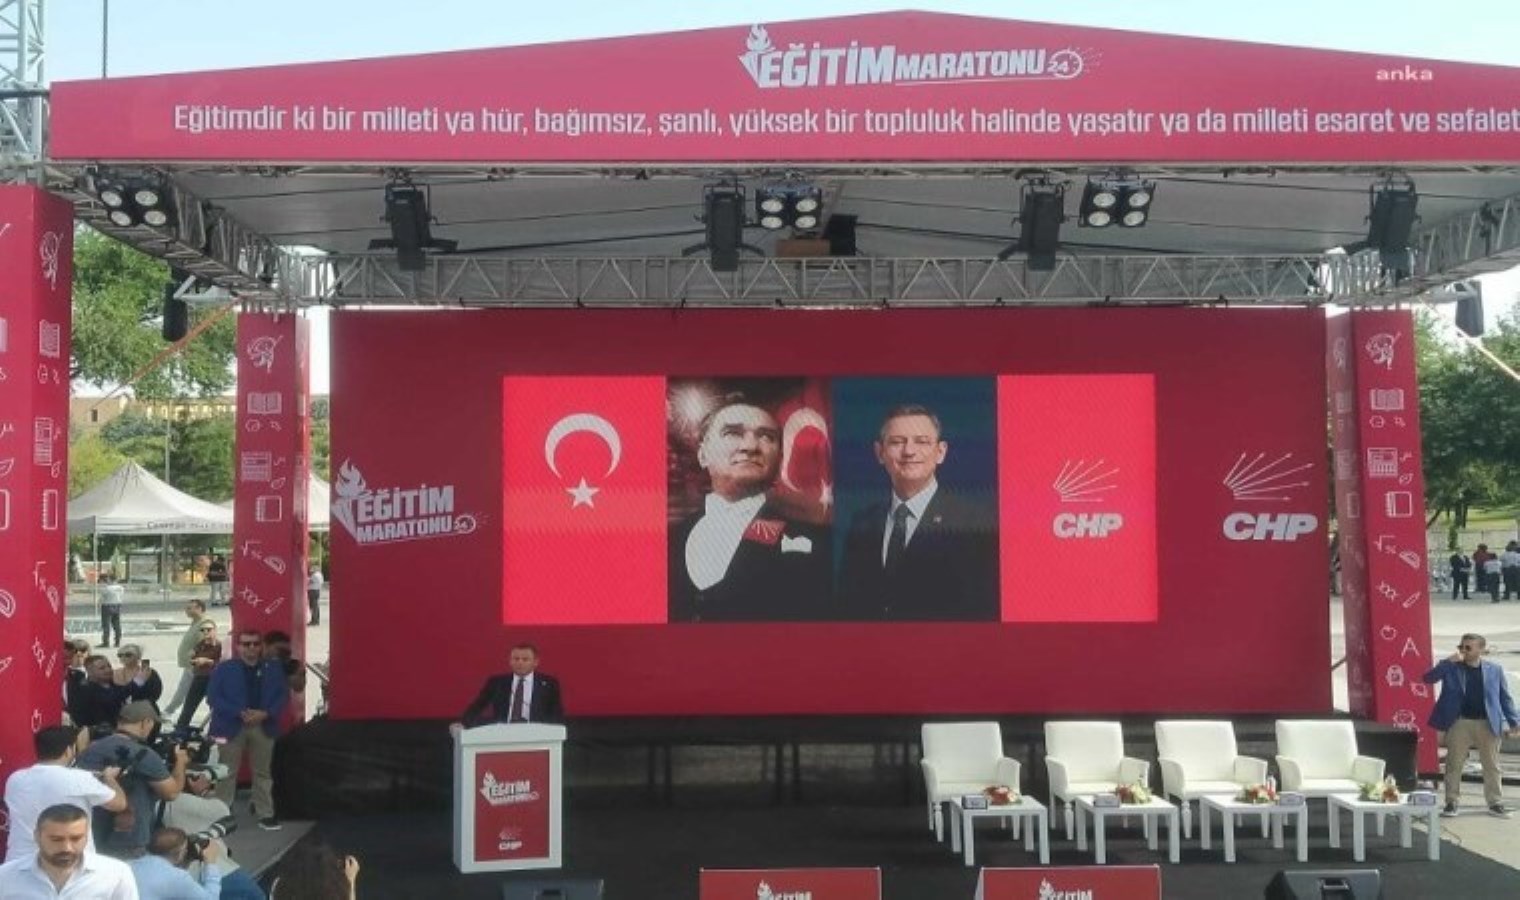 CHP’li Özçağdaş, 24 saatlik eğitim maratonunu Cumhuriyet’e anlattı: